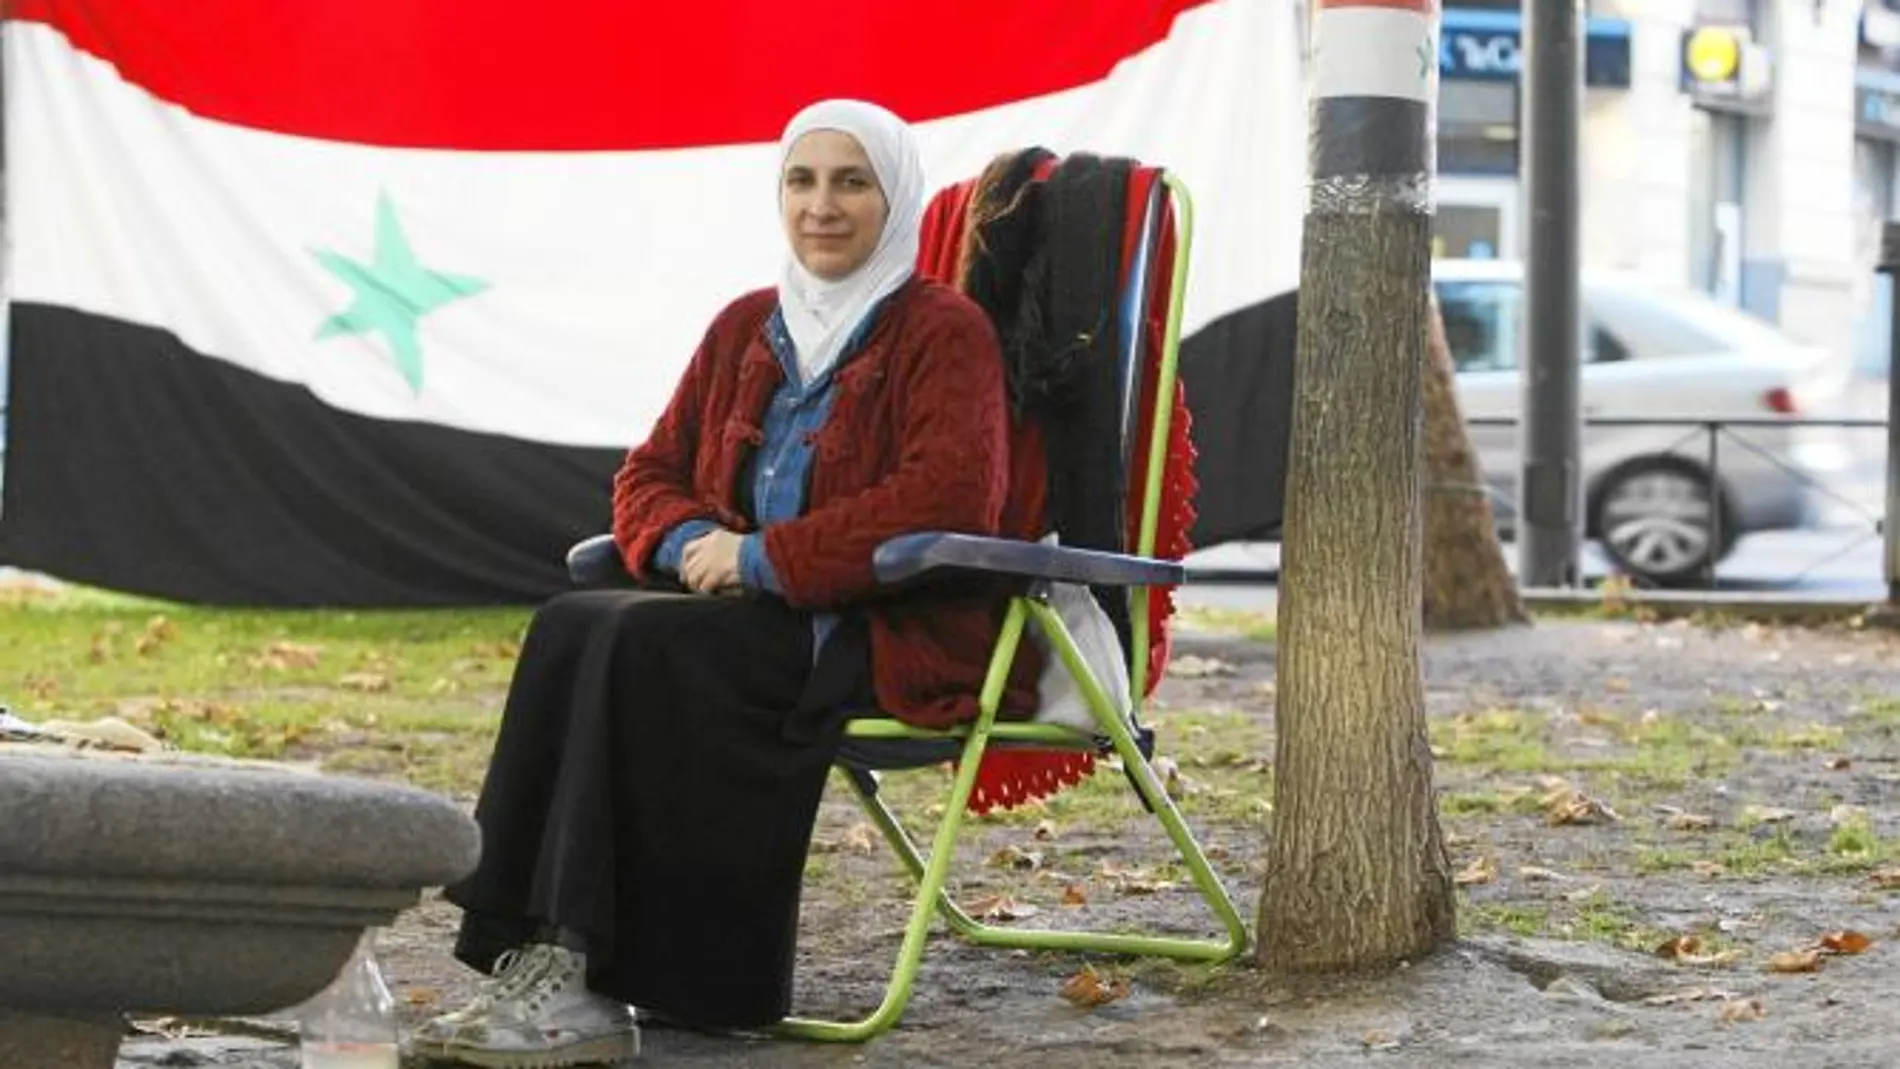 Alia, en huelga de hambre desde el 16 de septiembre, frente a la Embajada